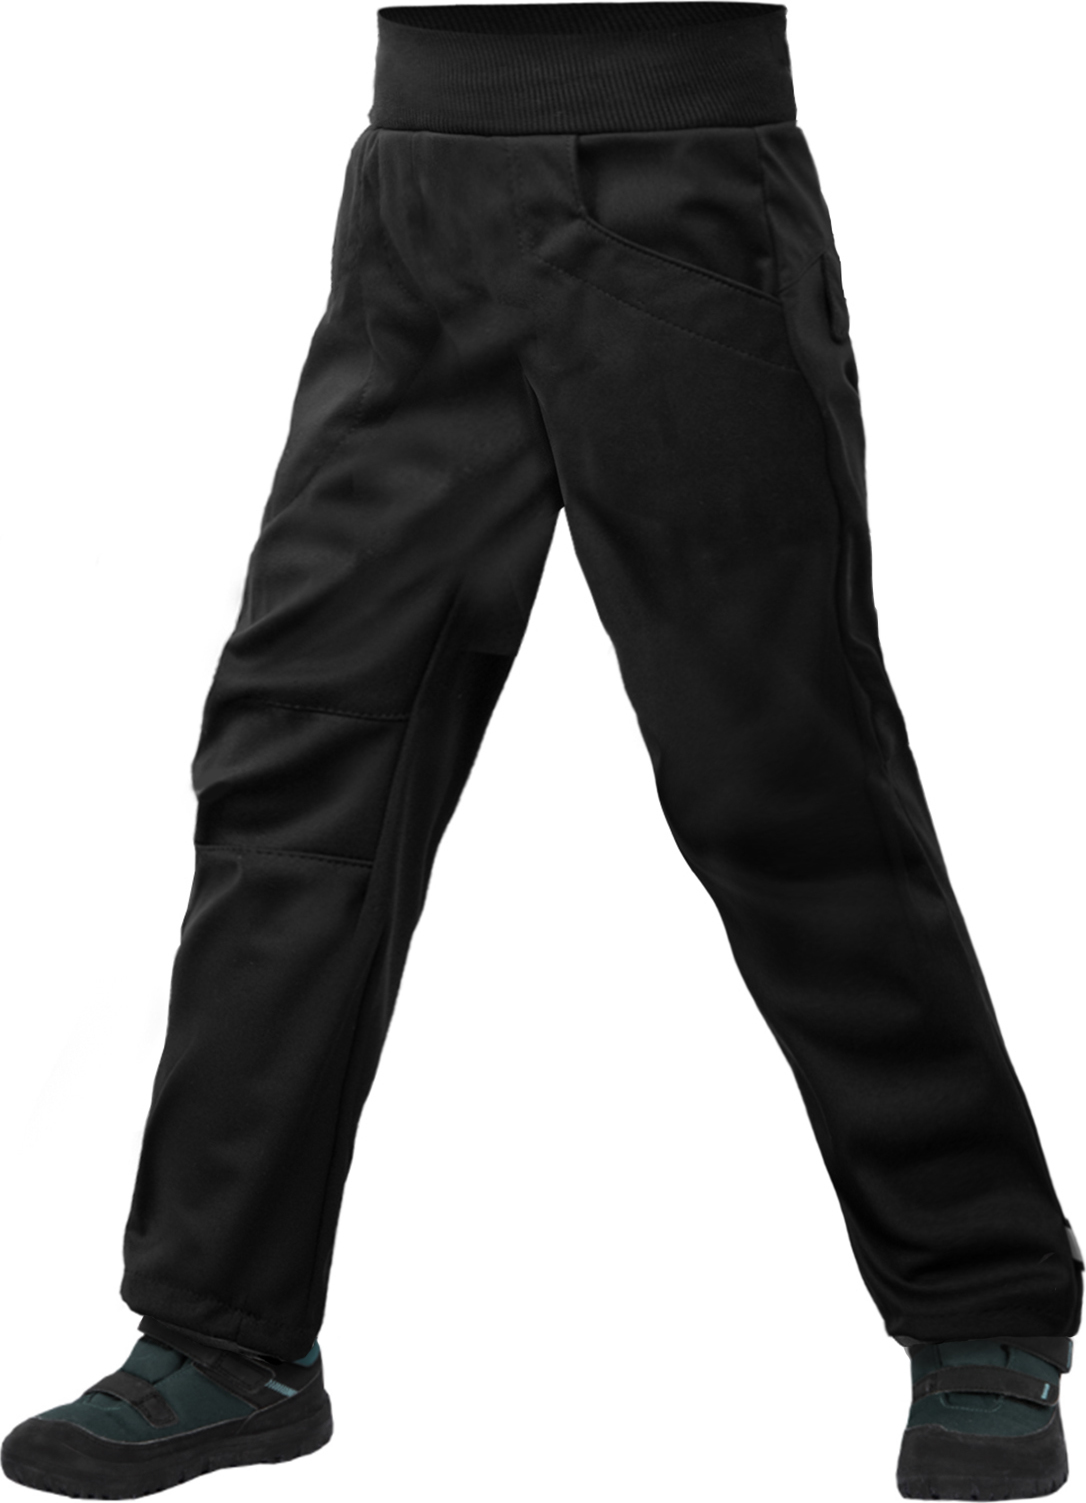 Dětské softshellové kalhoty s fleecem UNUO Cool, Černá Velikost: 98/104